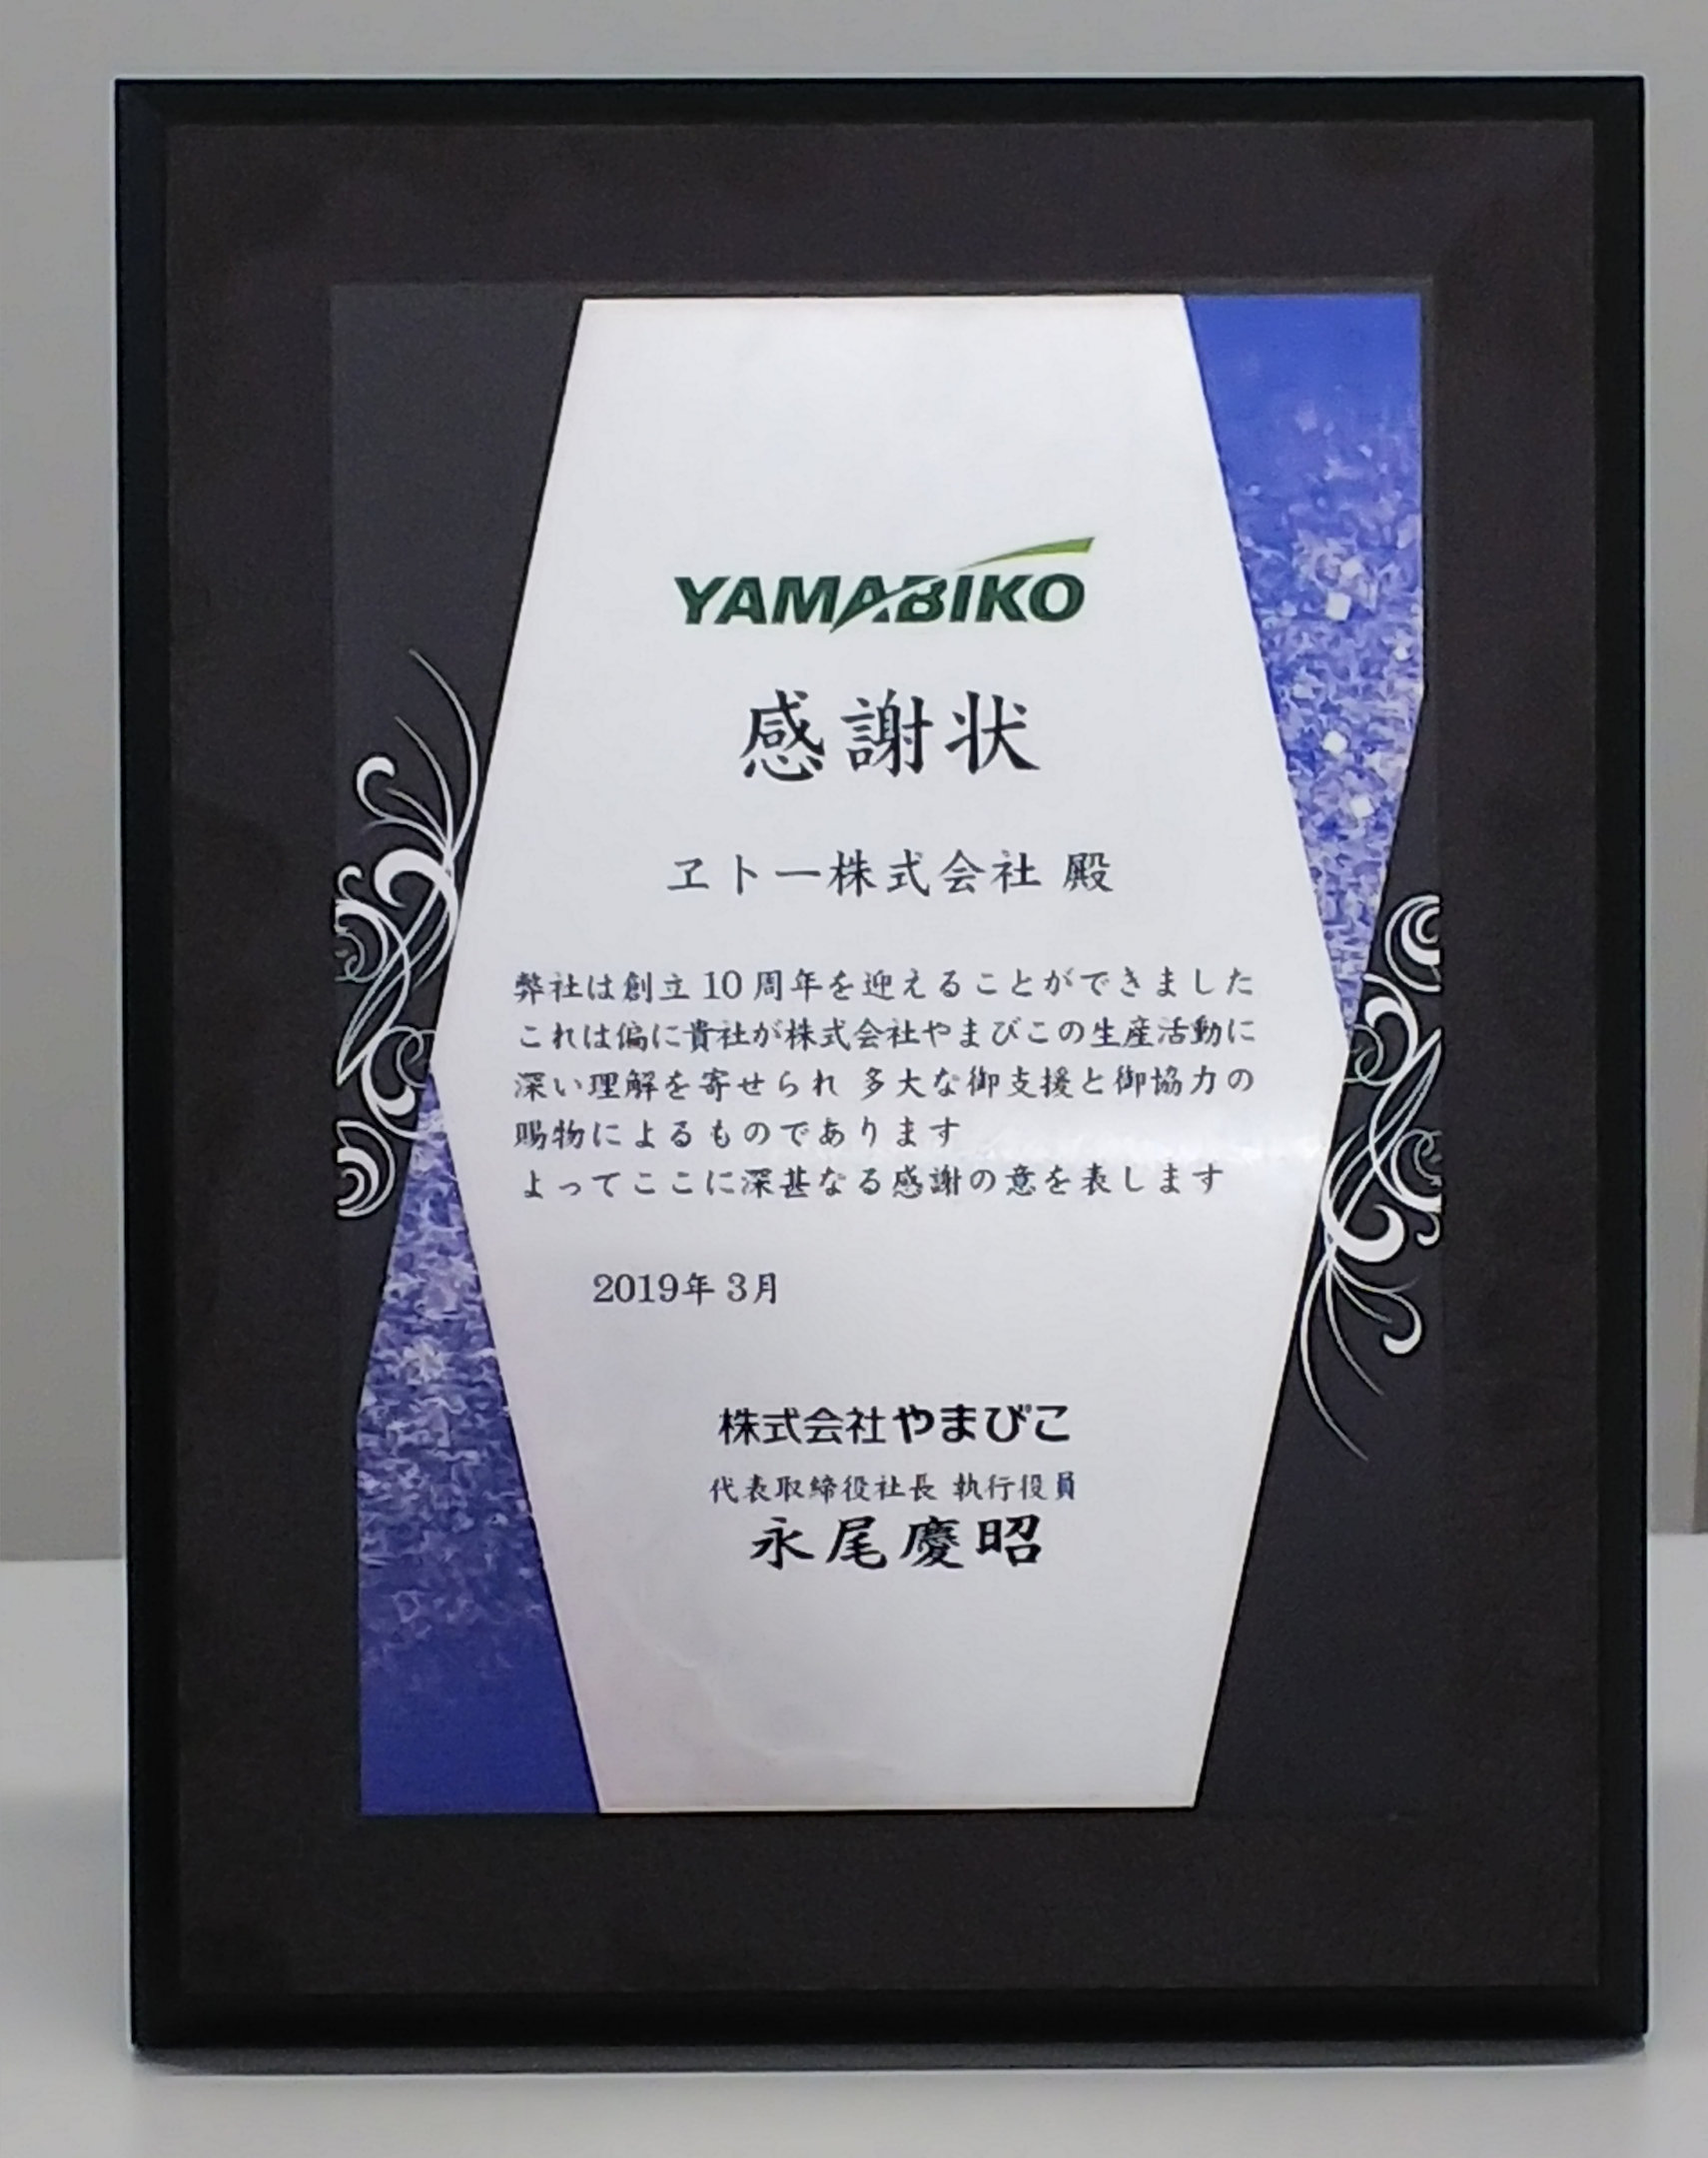 Award from Yamabiko Co., Ltd.